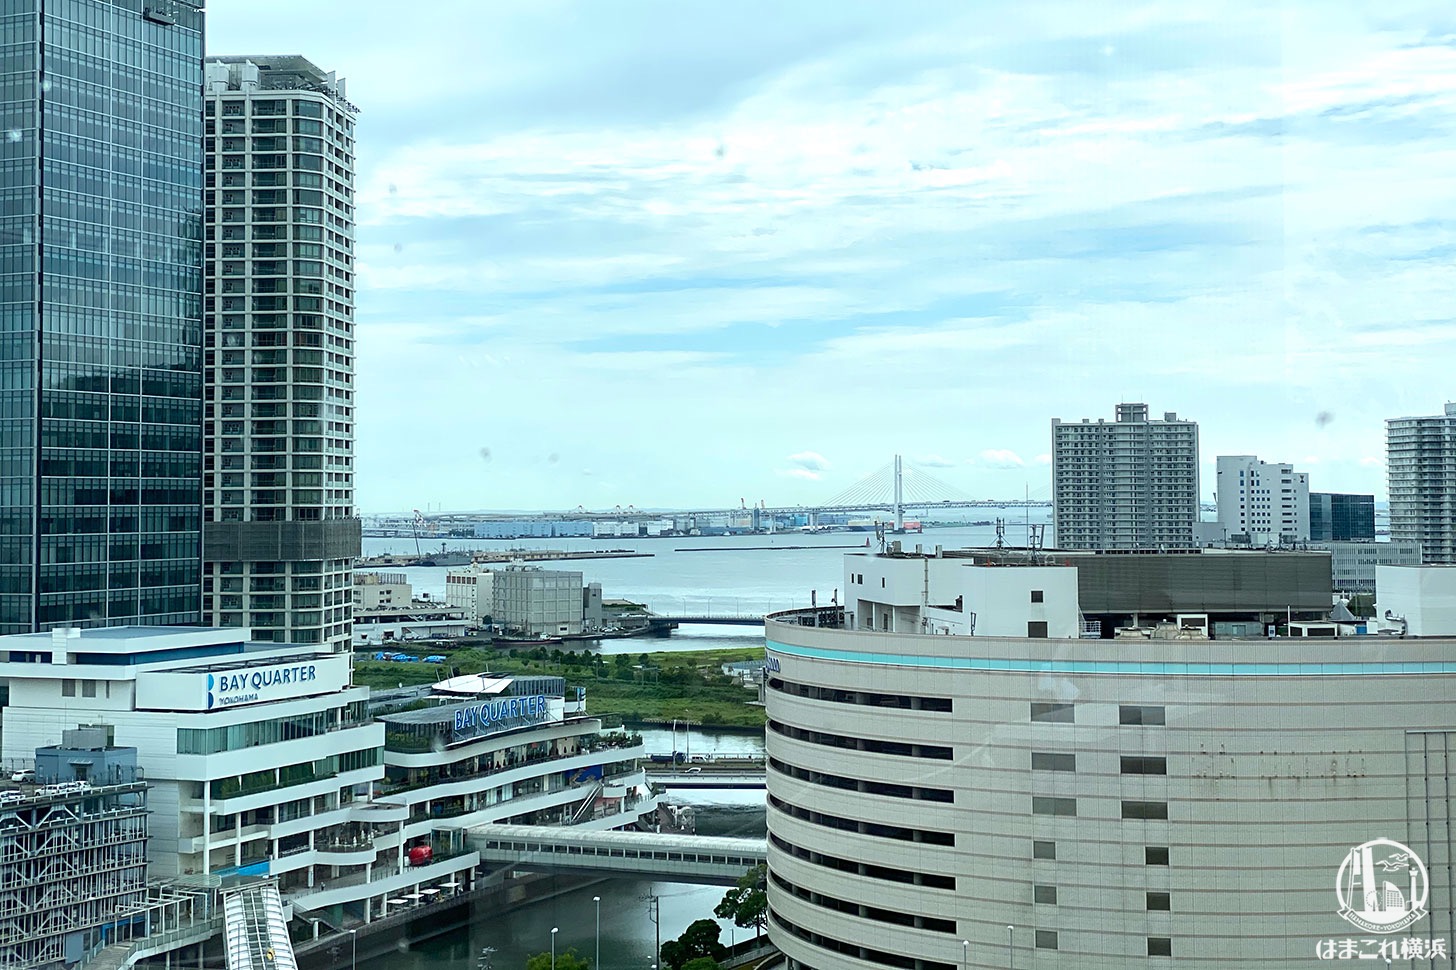 屋上庭園「うみそらデッキ」窓側のカウンターから見た景色 横浜港